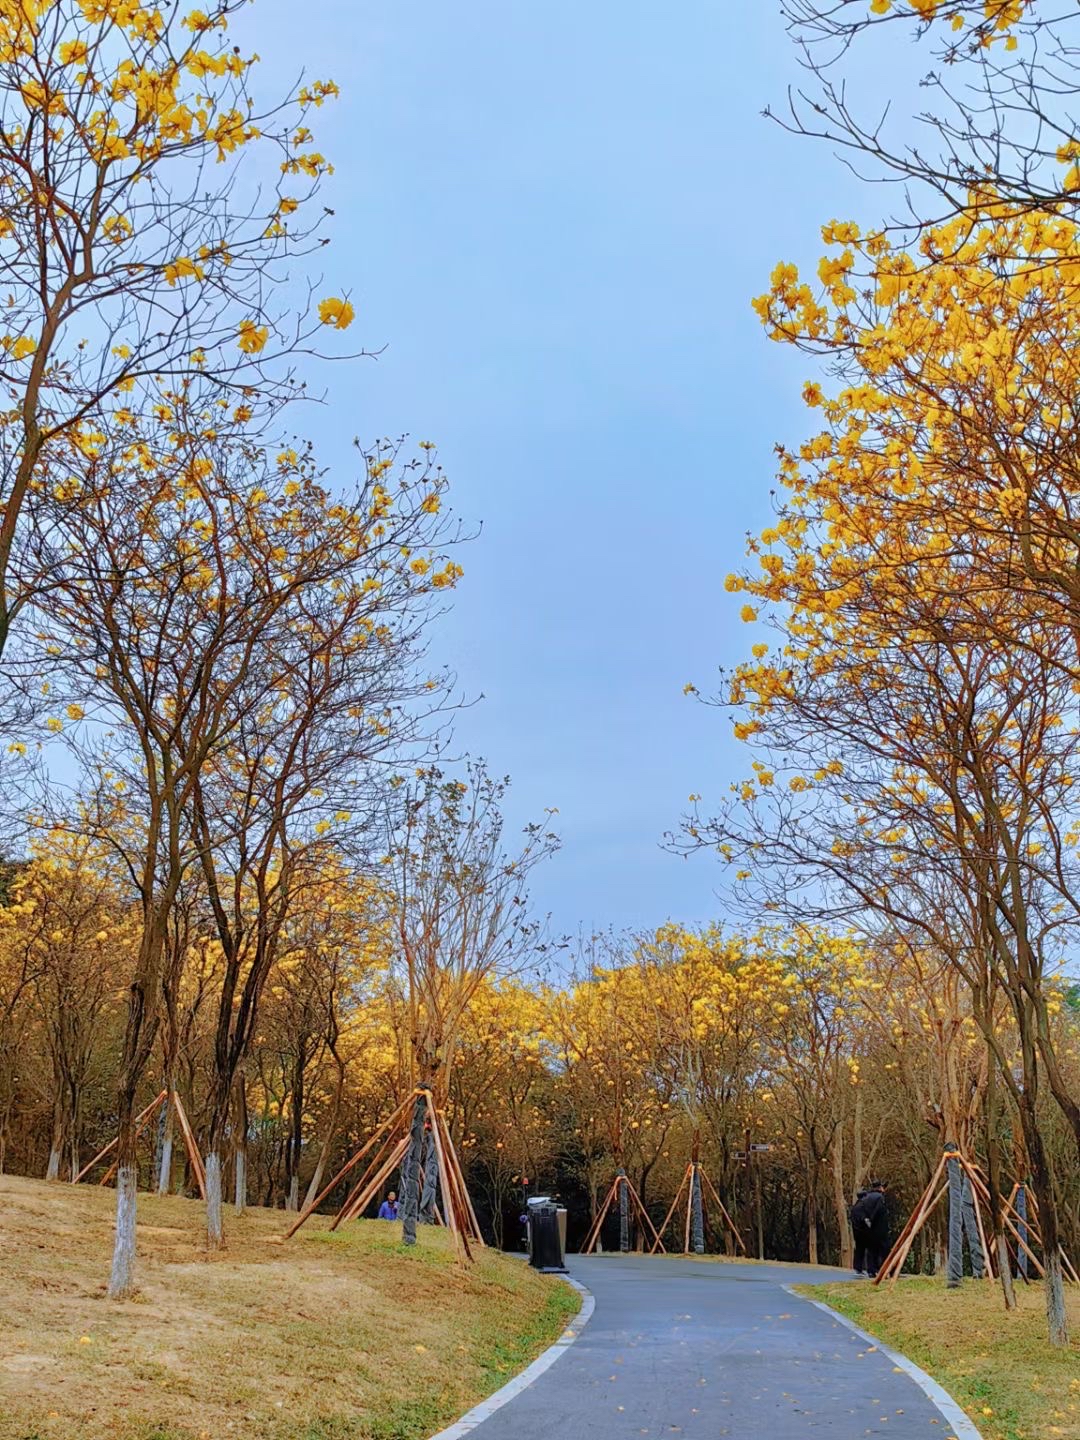 秋天的色彩如画卷般展开，绿叶慢慢染上黄、红、棕等各种色彩，仿佛是大自然的调色板。清风拂过，落叶纷飞，